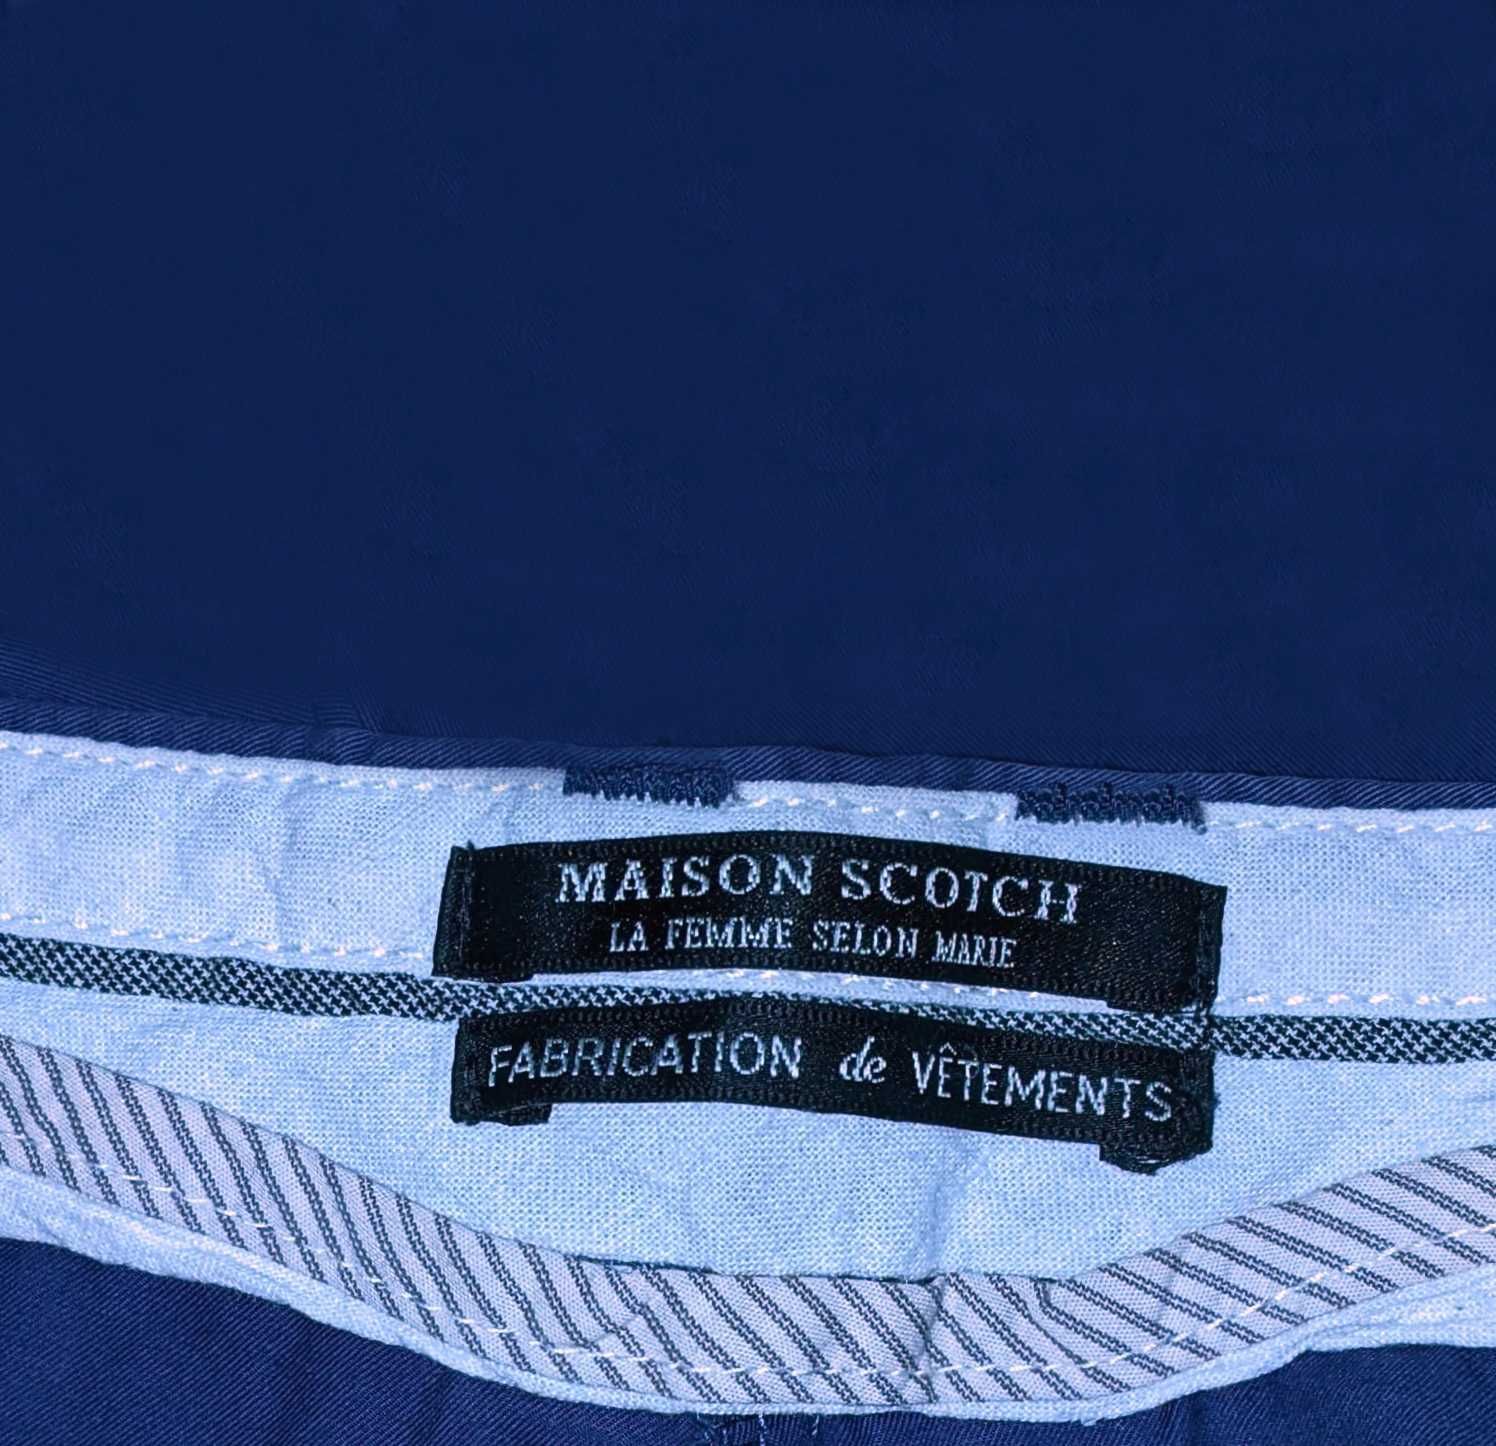 Pantaloni dama MAISON SCOTCH, bumbac, marimea M